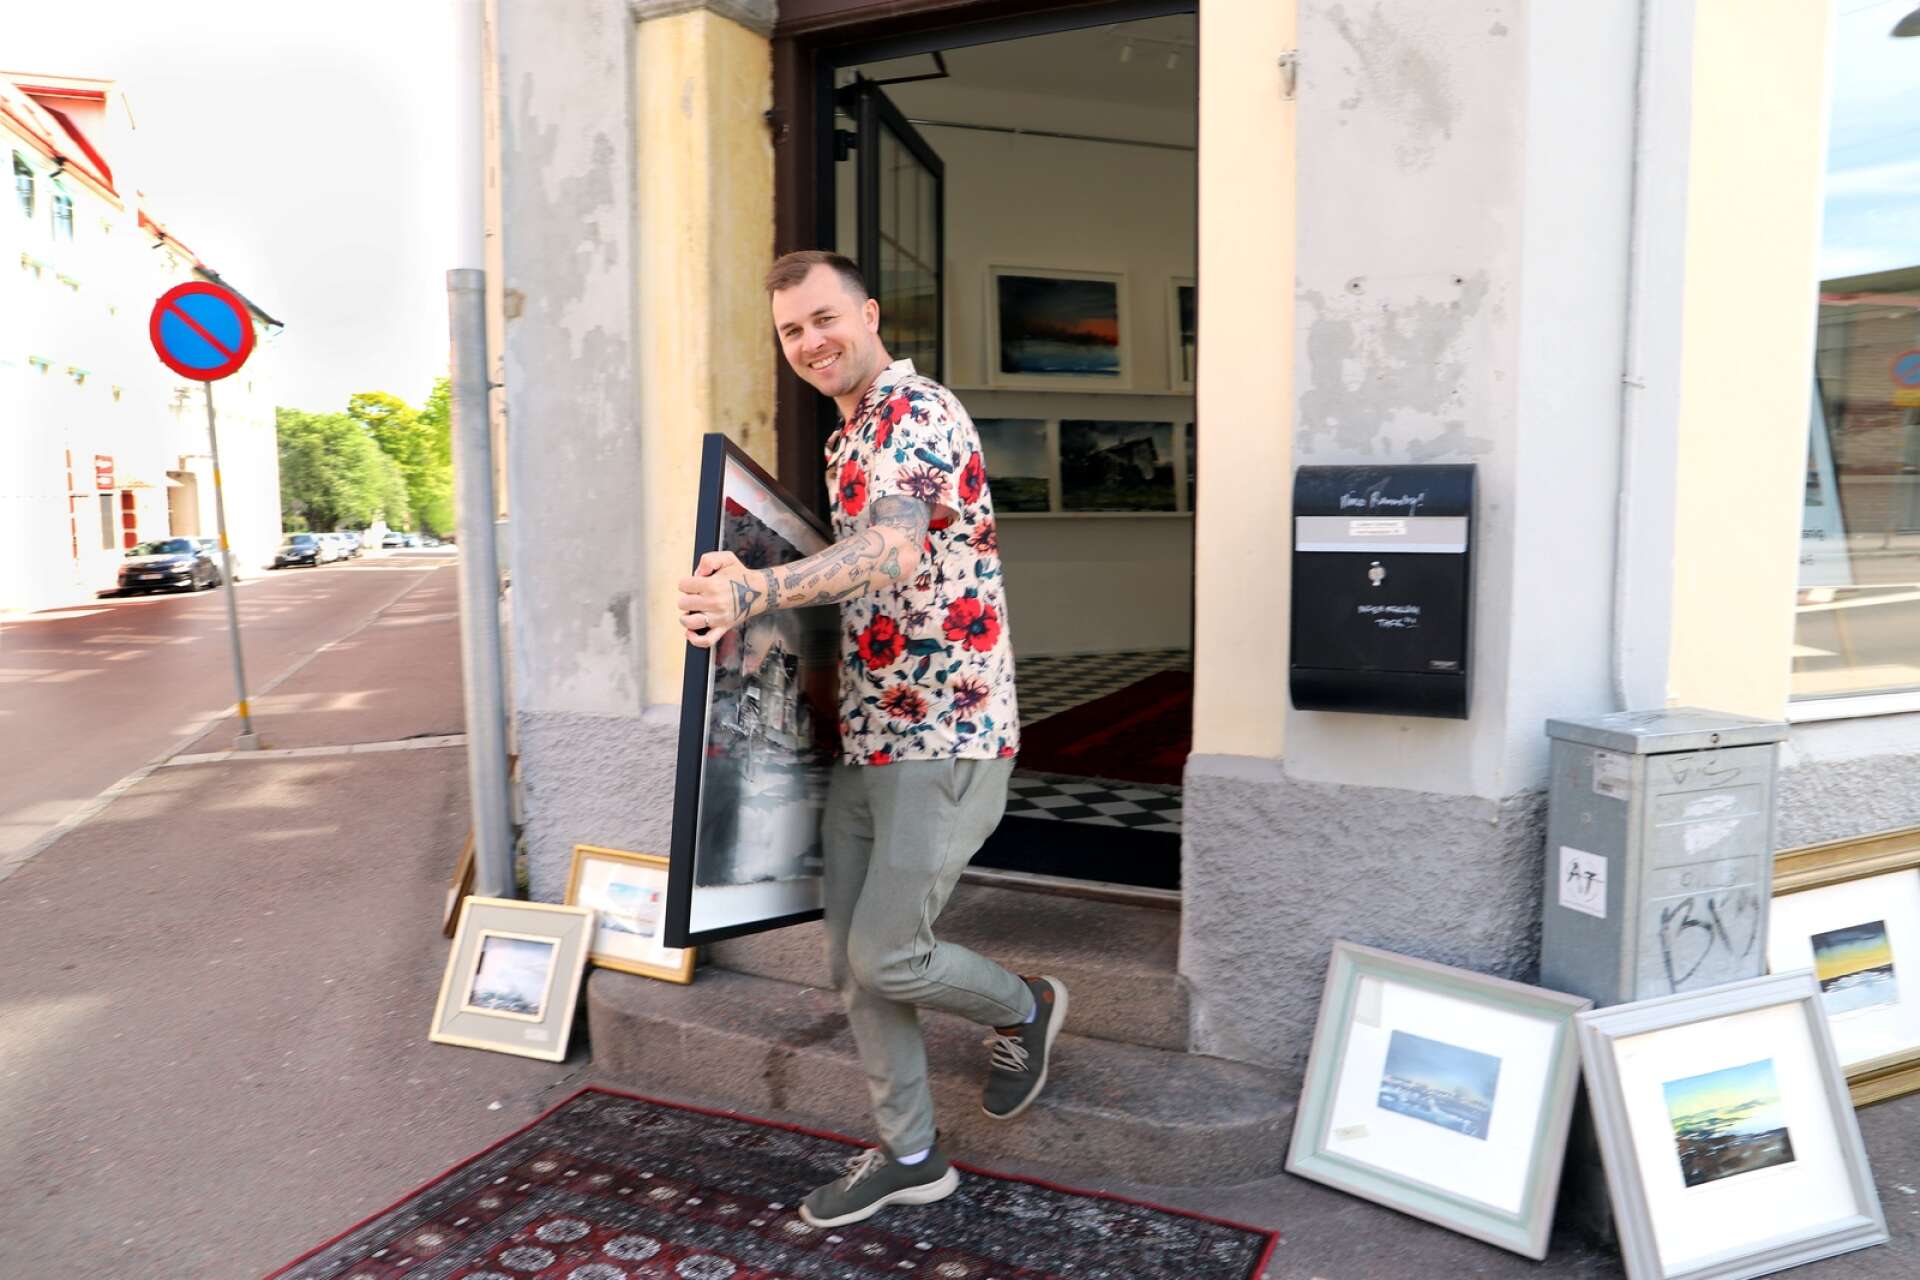 ”Det får inte bli så sterilt, jag vill ha det lite bohemiskt”, säger Daniel Zausnig och bär ut konst på gatan, för att ge en lockande entré till utställningen Värmland på Galleri Värmland.